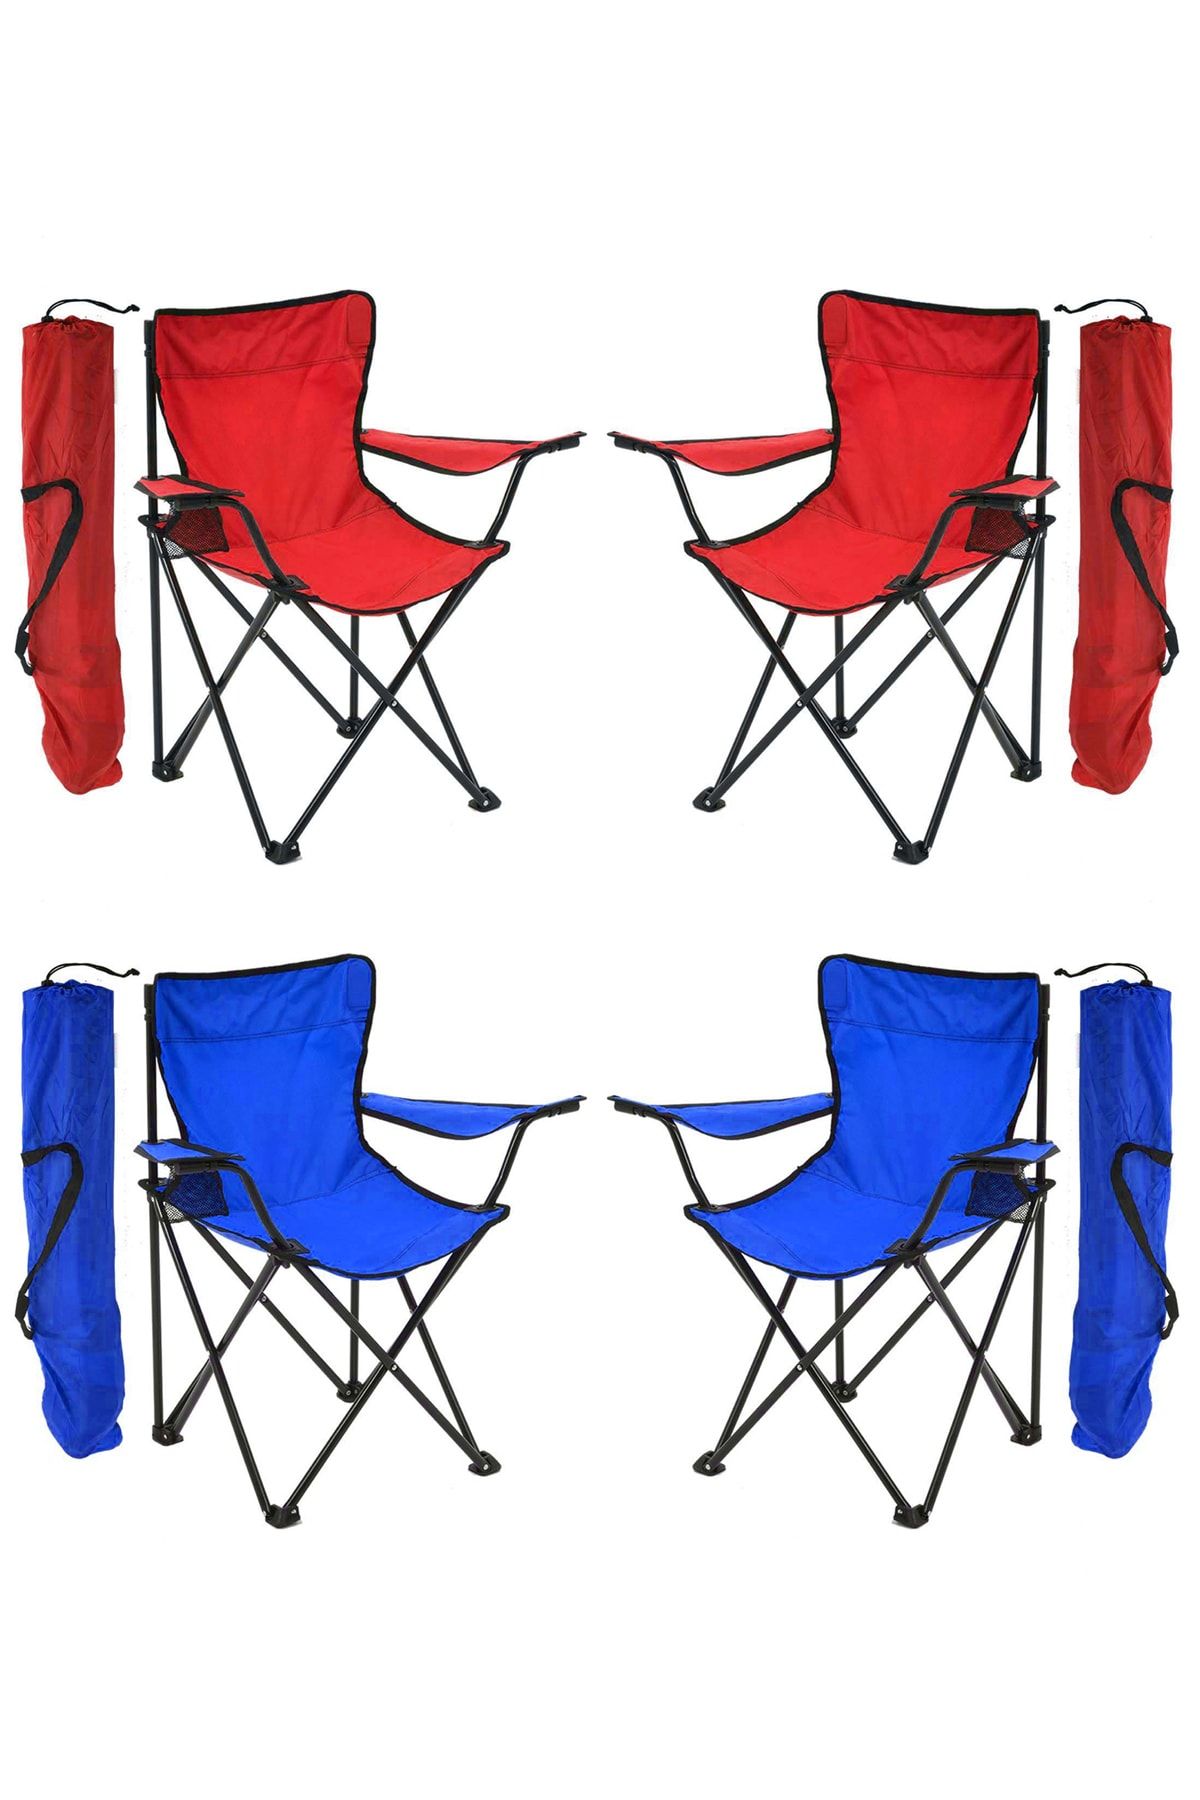 Exent 4'lü Rejisör Kamp Sandalyesi Piknik Sandalyesi Katlanır Sandalye Taşıma Çantalı 2 Kırmızı 2 Mavi